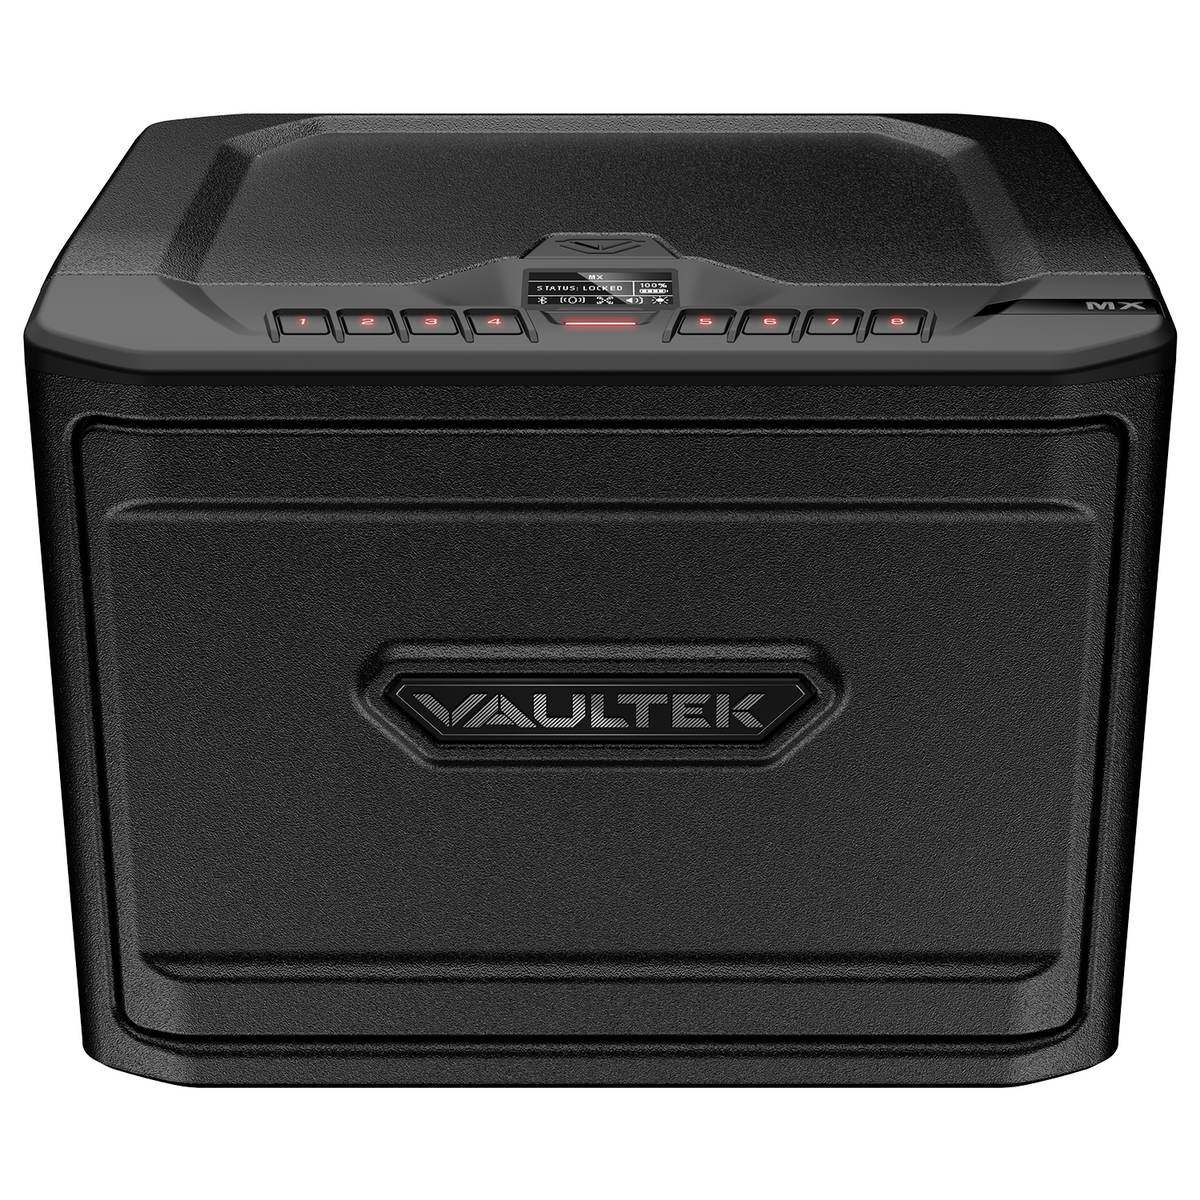 Vaultek- MX High Capacity Rugged Modular Bluetooth Gun Safe